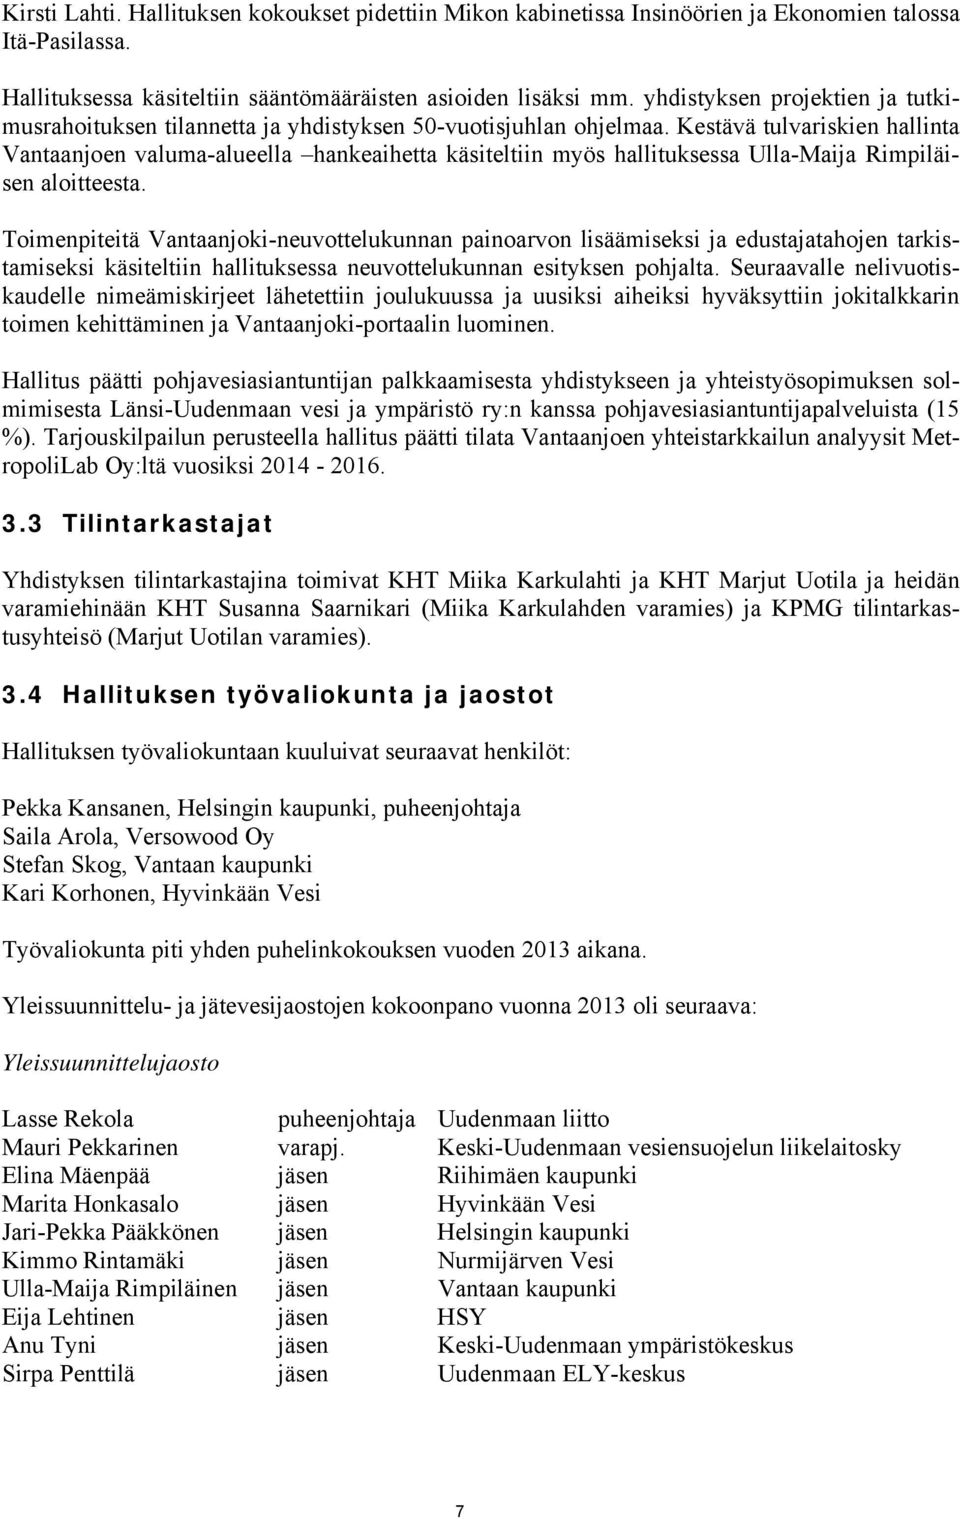 Kestävä tulvariskien hallinta Vantaanjoen valuma-alueella hankeaihetta käsiteltiin myös hallituksessa Ulla-Maija Rimpiläisen aloitteesta.